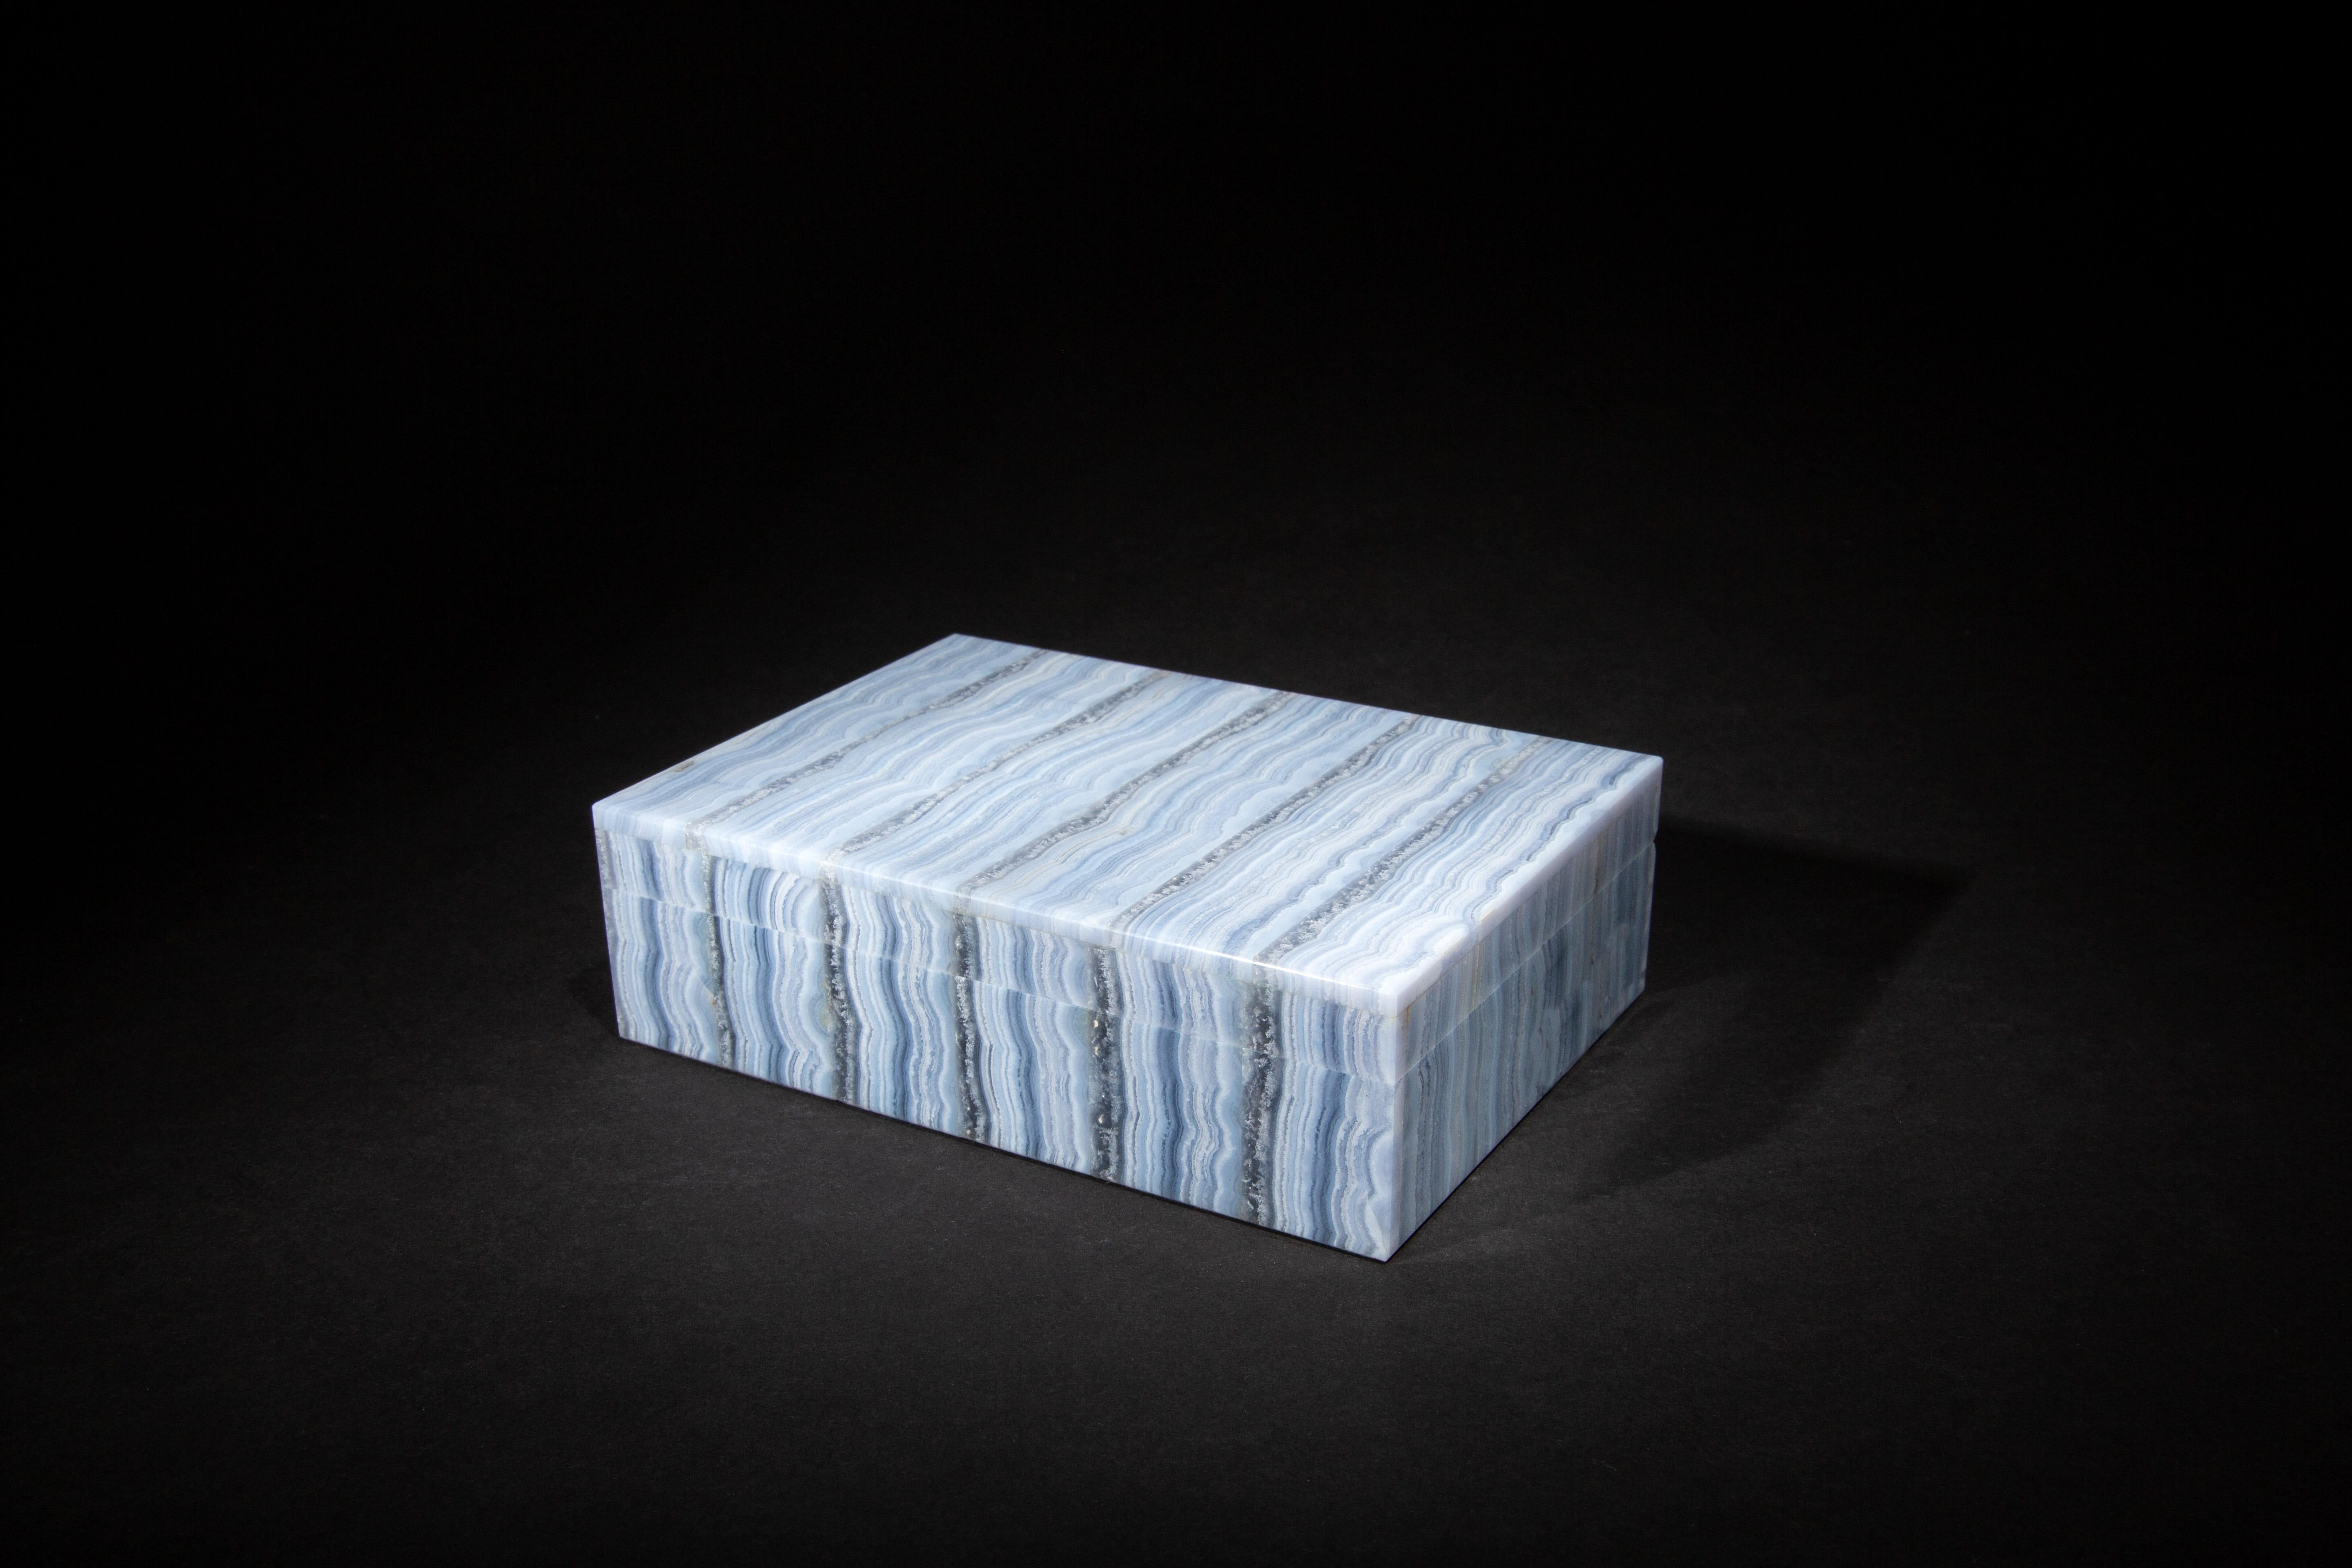 Boîte en dentelle d'agate bleue :

L'agate Blue Lace est une variété de calcédoine, qui est un type de quartz microcristallin. Whiting est connu pour ses délicats motifs bleus et blancs en bandes ou en dentelles, qui lui confèrent une apparence